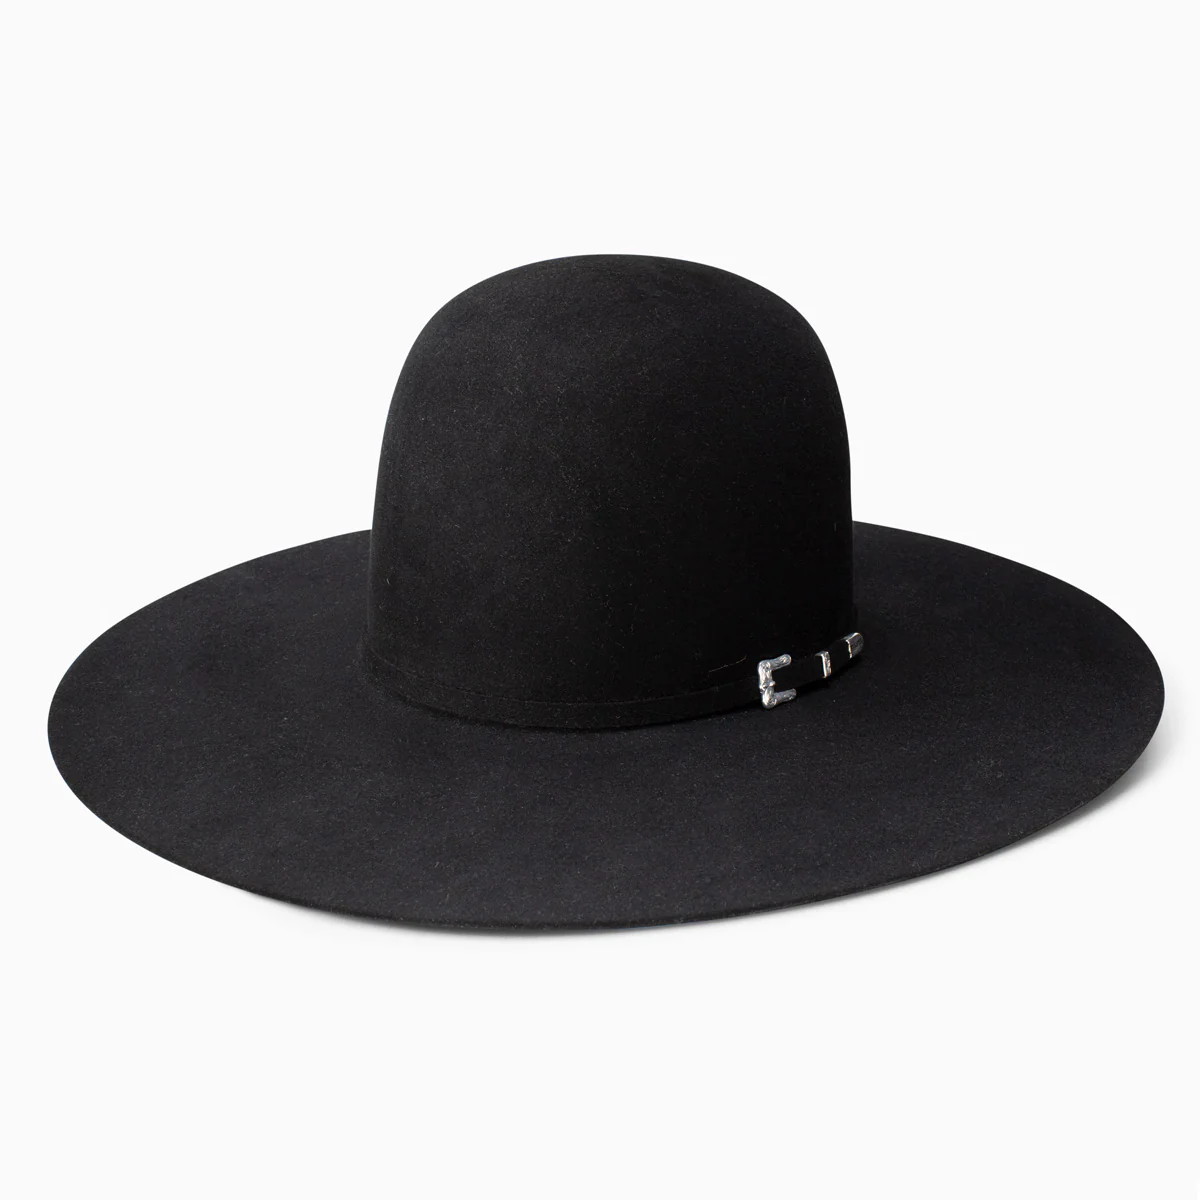 20X Black Felt Cowboy Hat